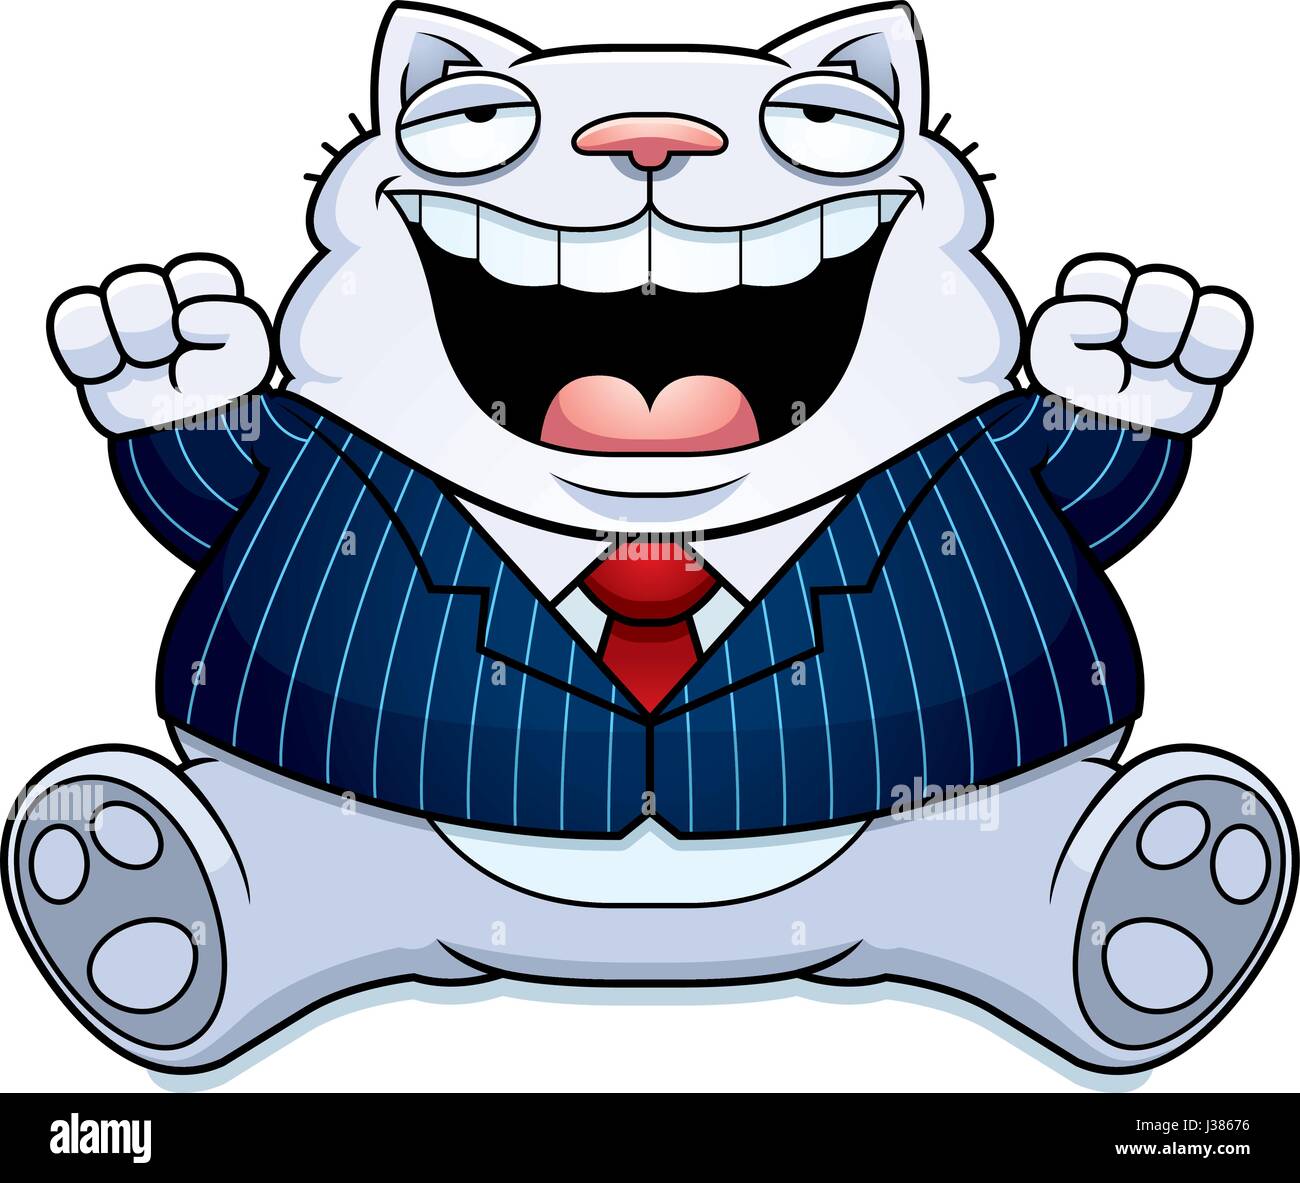 Ilustración de una caricatura de un gato gordo en un traje sonriente y  sentado Imagen Vector de stock - Alamy